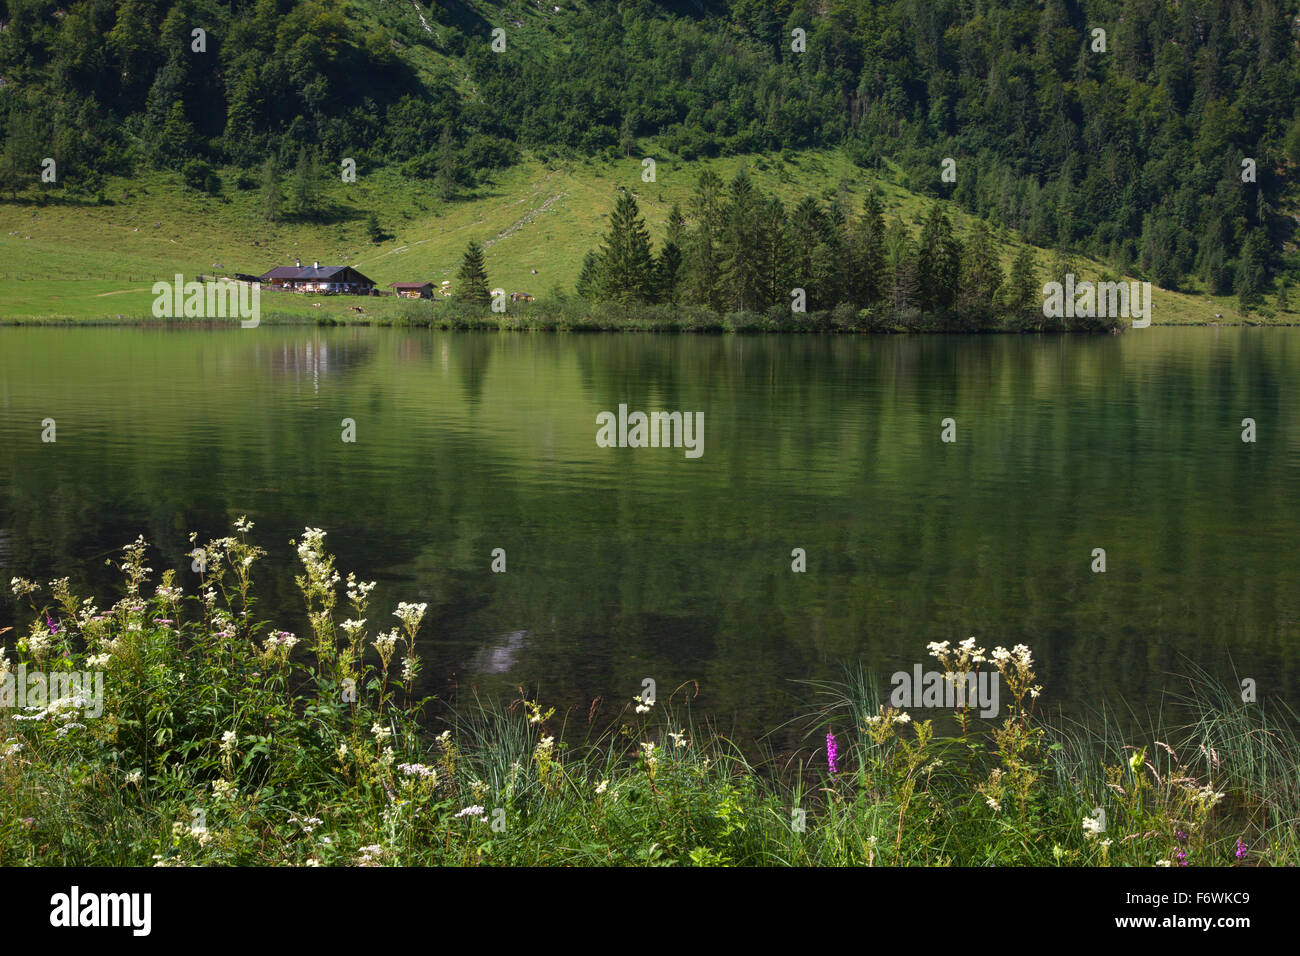 Près de salet dans la partie sud de Koenigssee, région de Berchtesgaden, le parc national de Berchtesgaden, Allemagne Banque D'Images